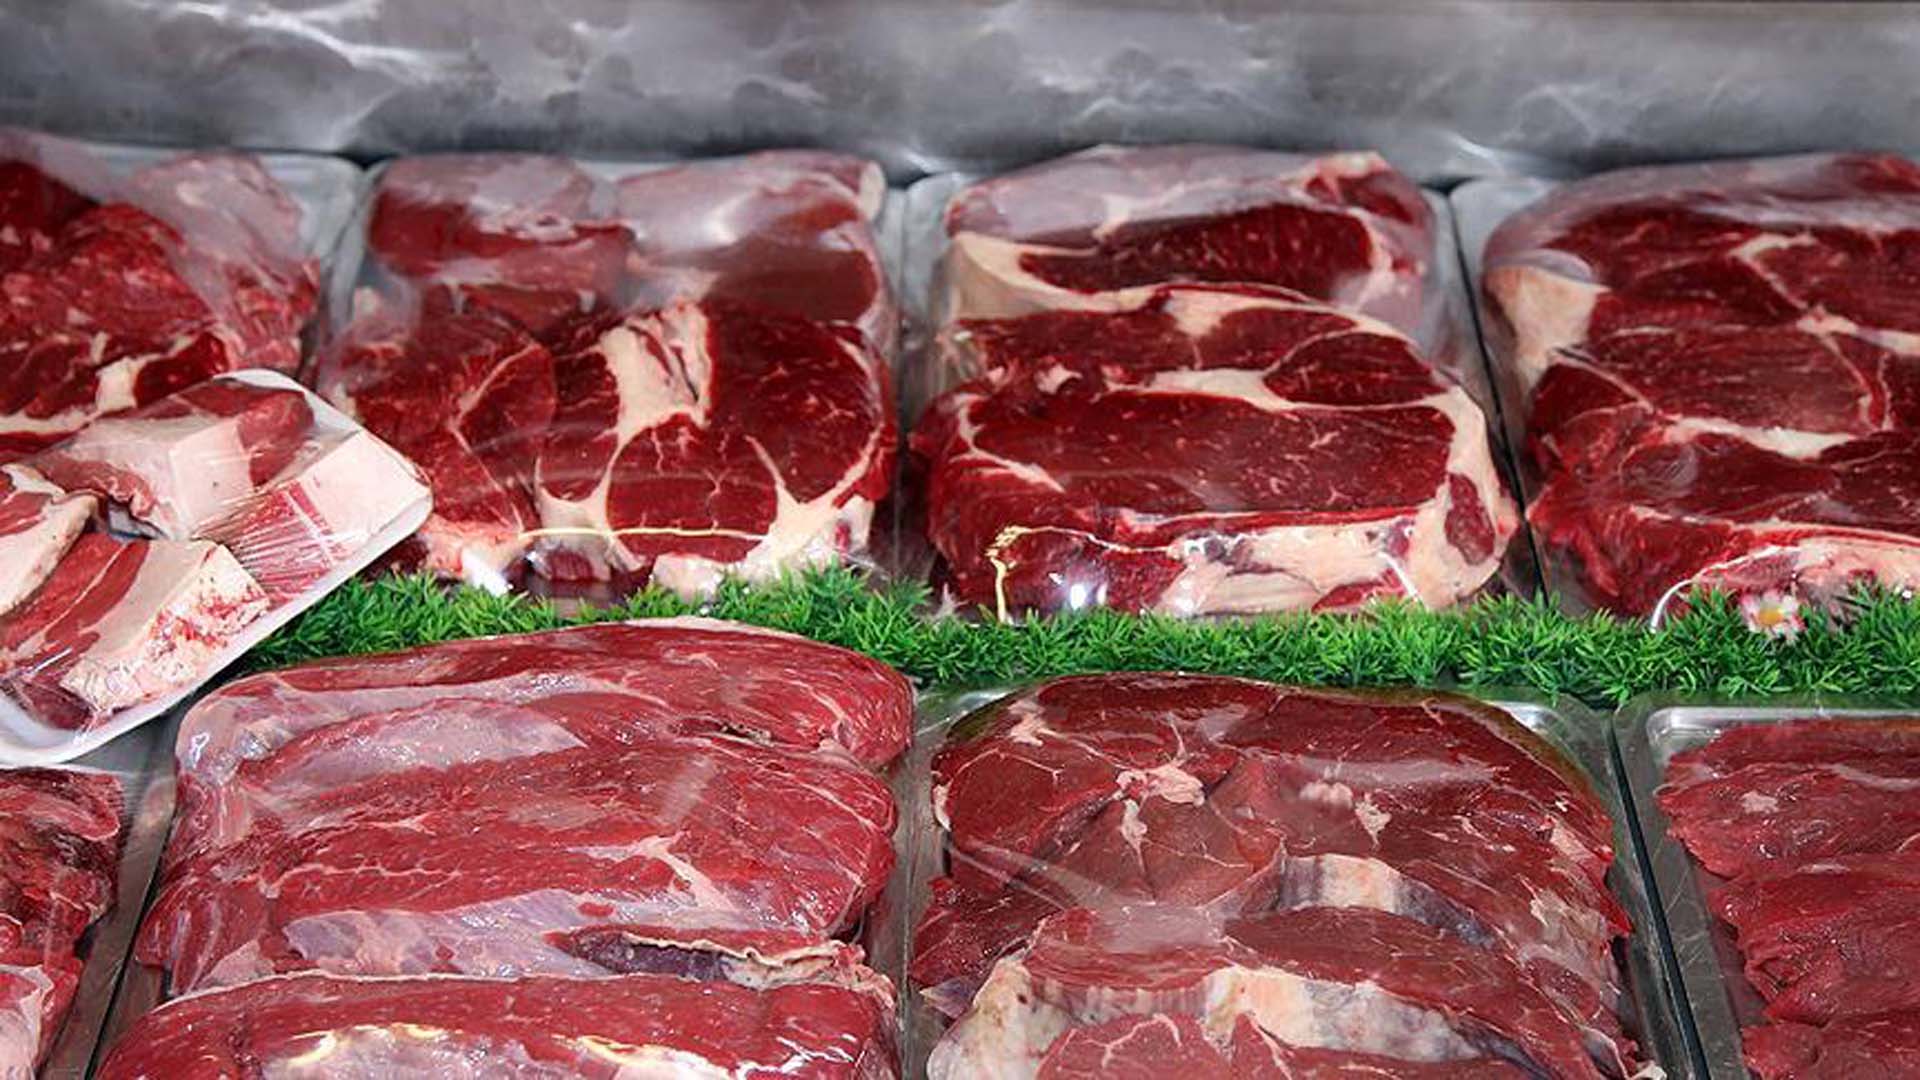 Son dakika | Tarım ve Orman Bakanlığı'ndan et fiyatına zam açıklaması: Kırmızı et piyasasını etkilememektedir